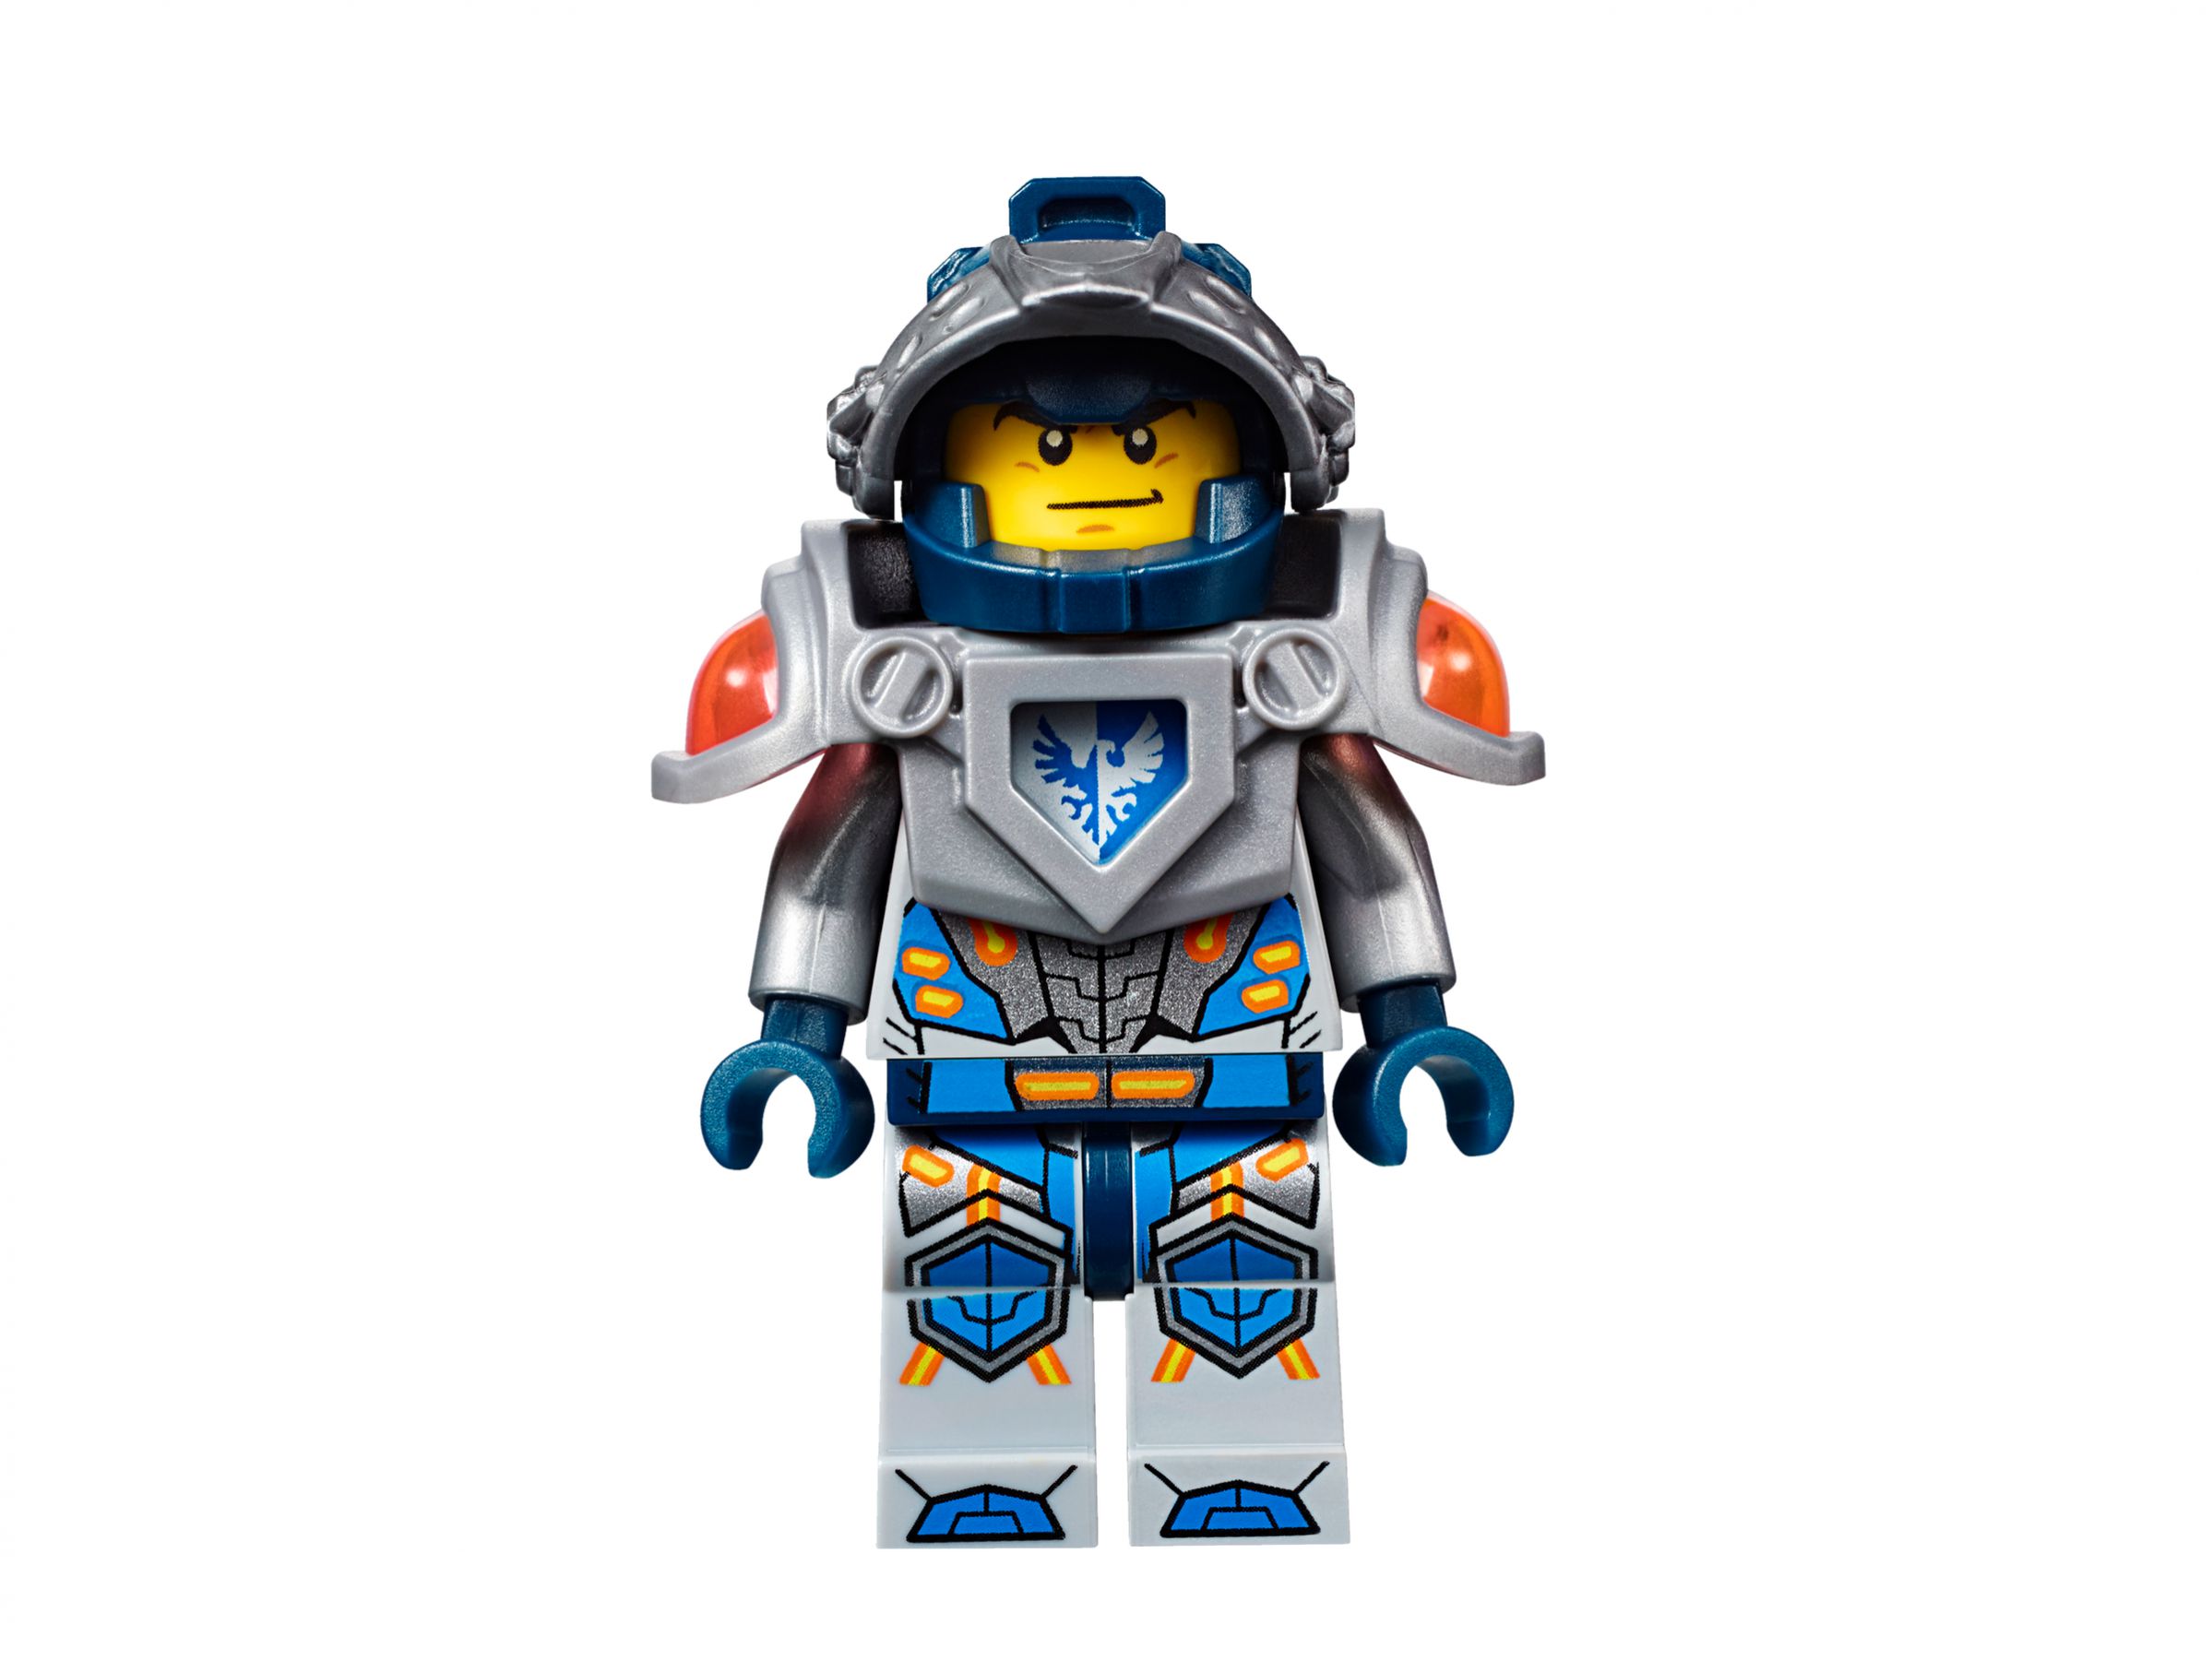 LEGO Nexo Knights 70317 Fortrex – Die rollende Festung LEGO_70317_alt14.jpg